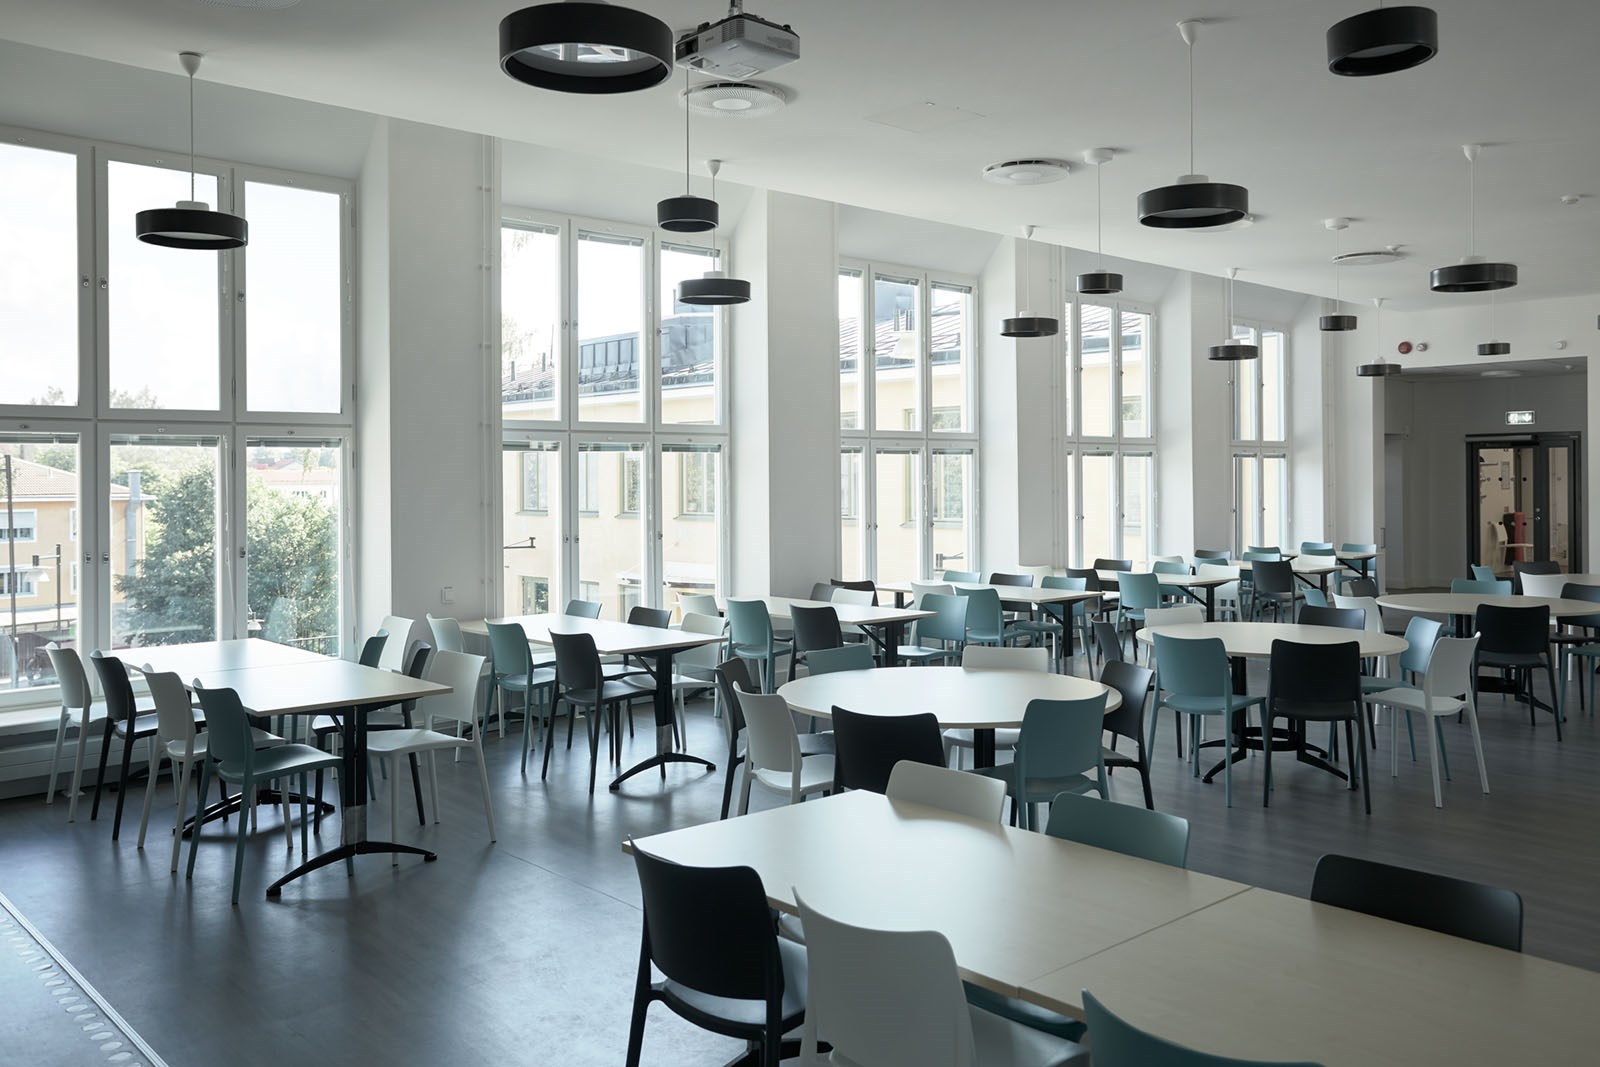 Bild på matsal i Enskedefältets skola med flera bord och stolar.